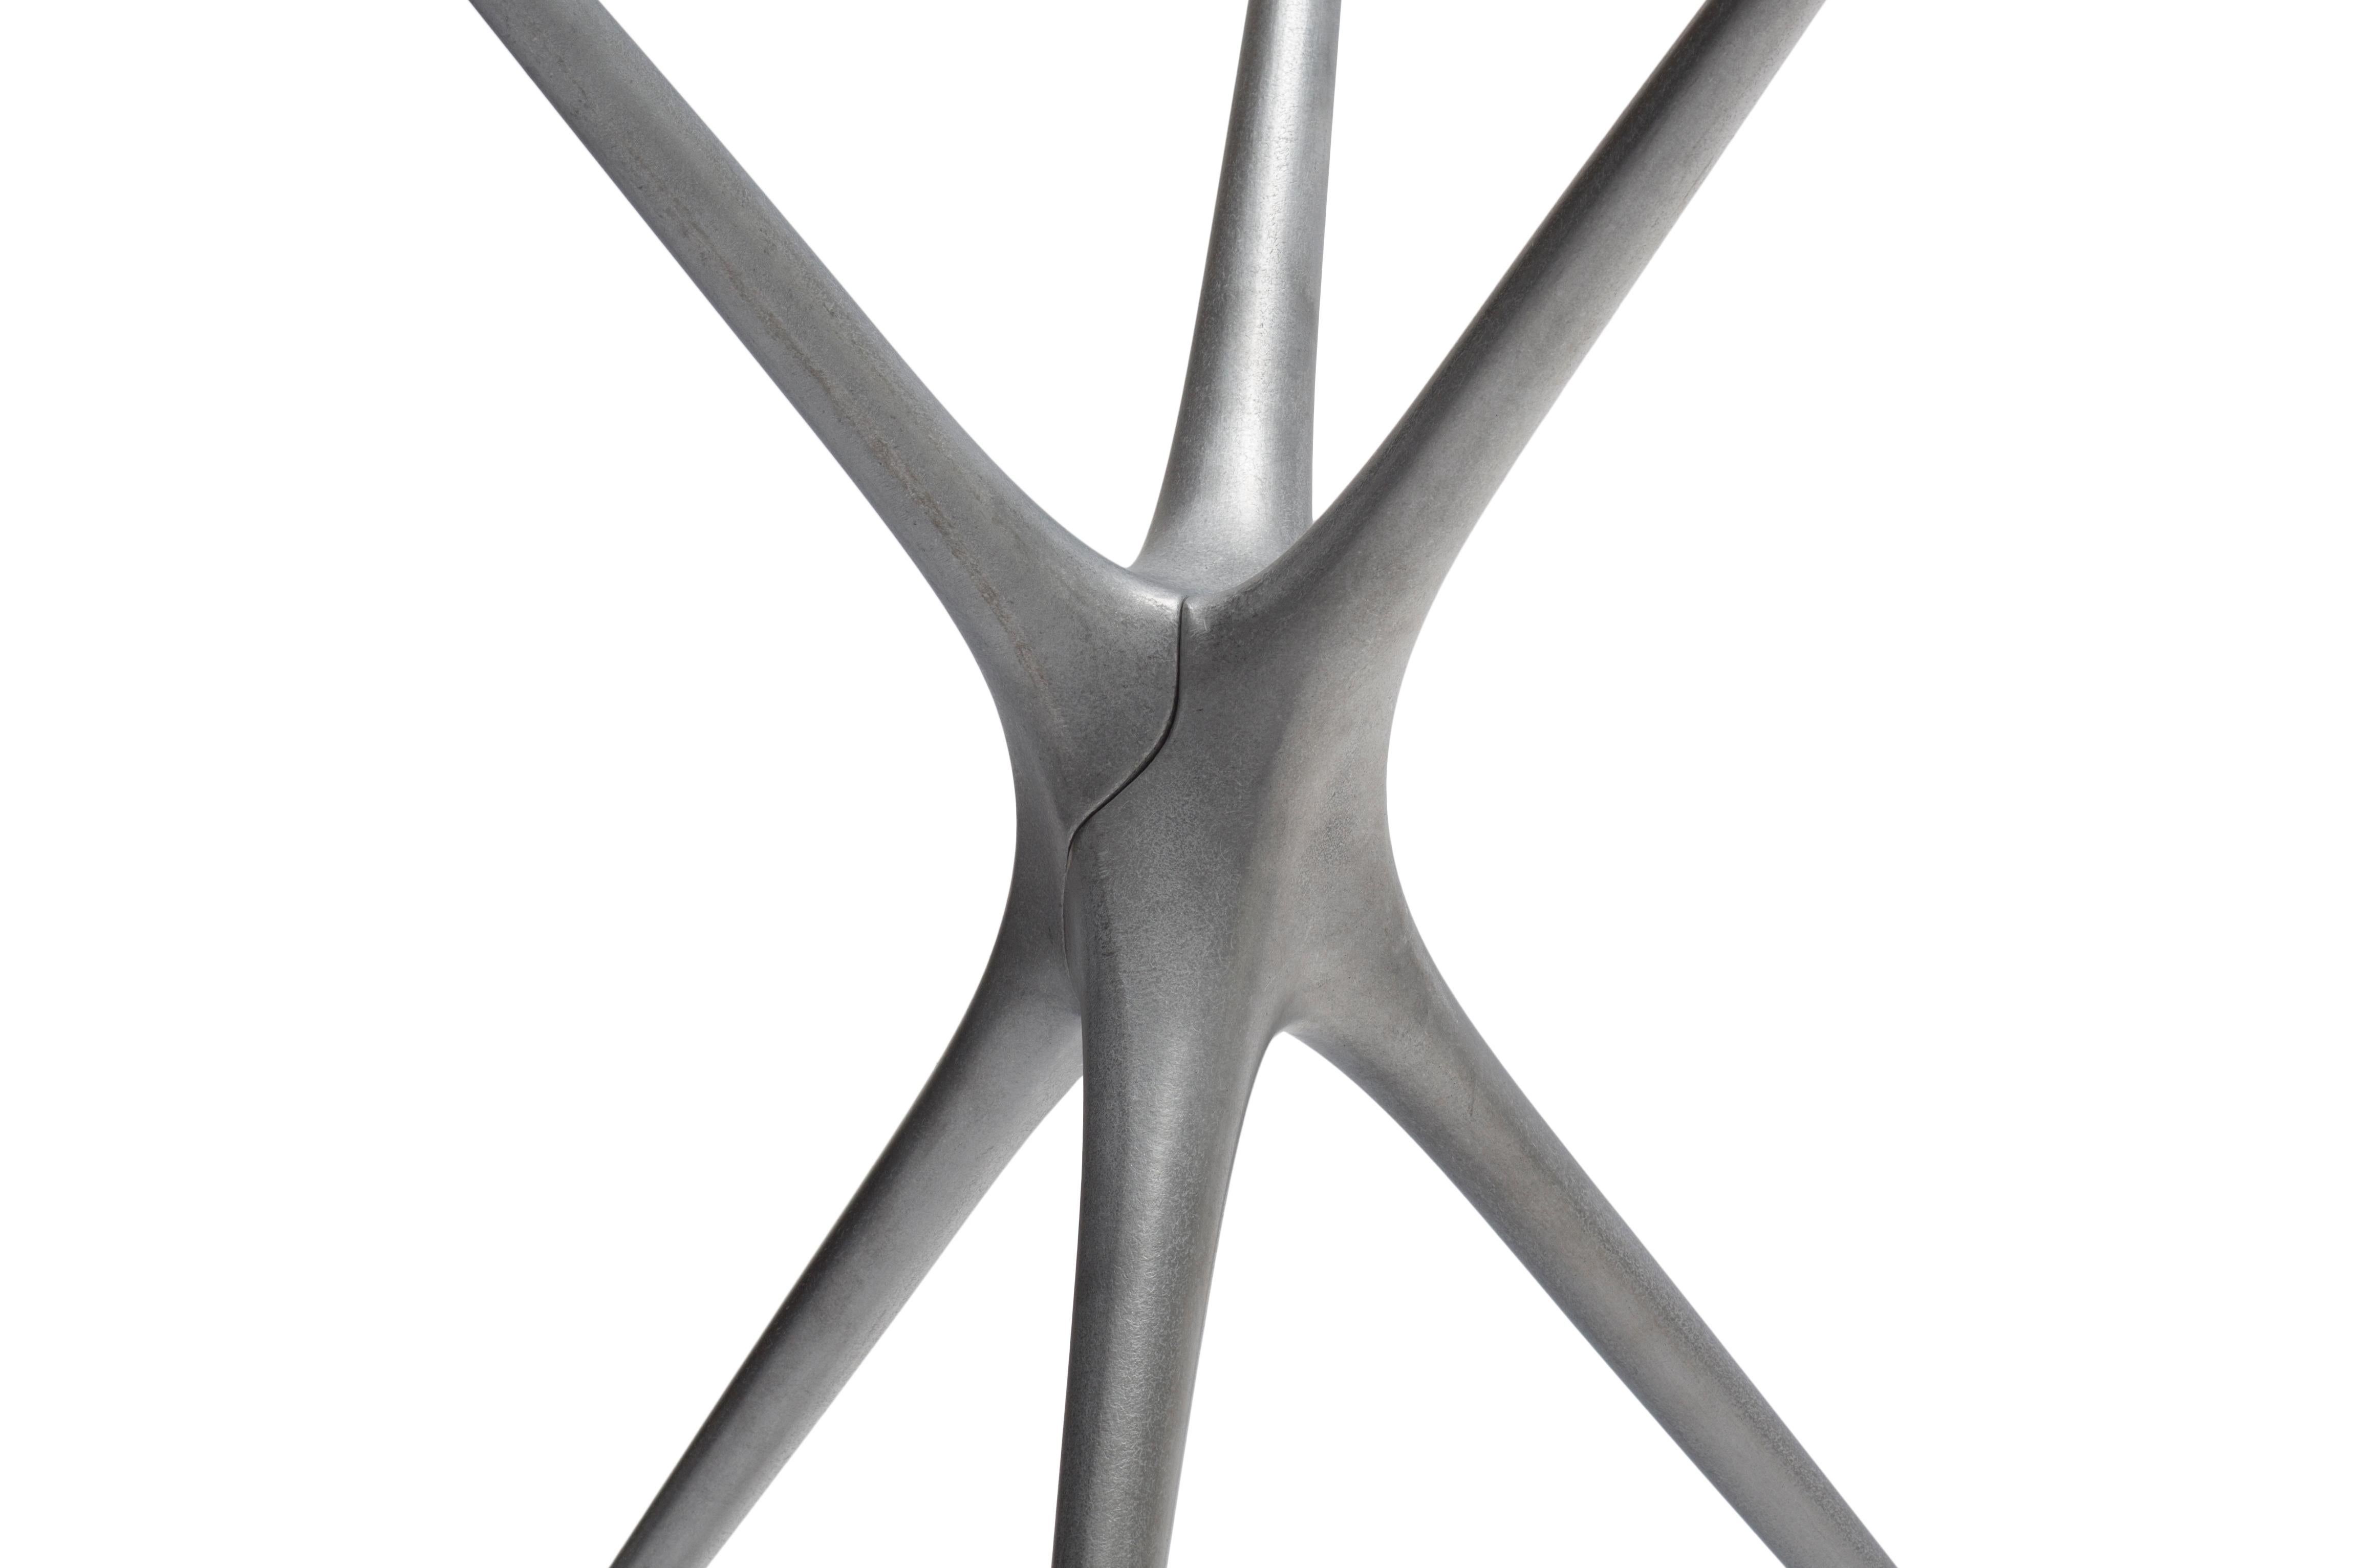 cast aluminum table legs